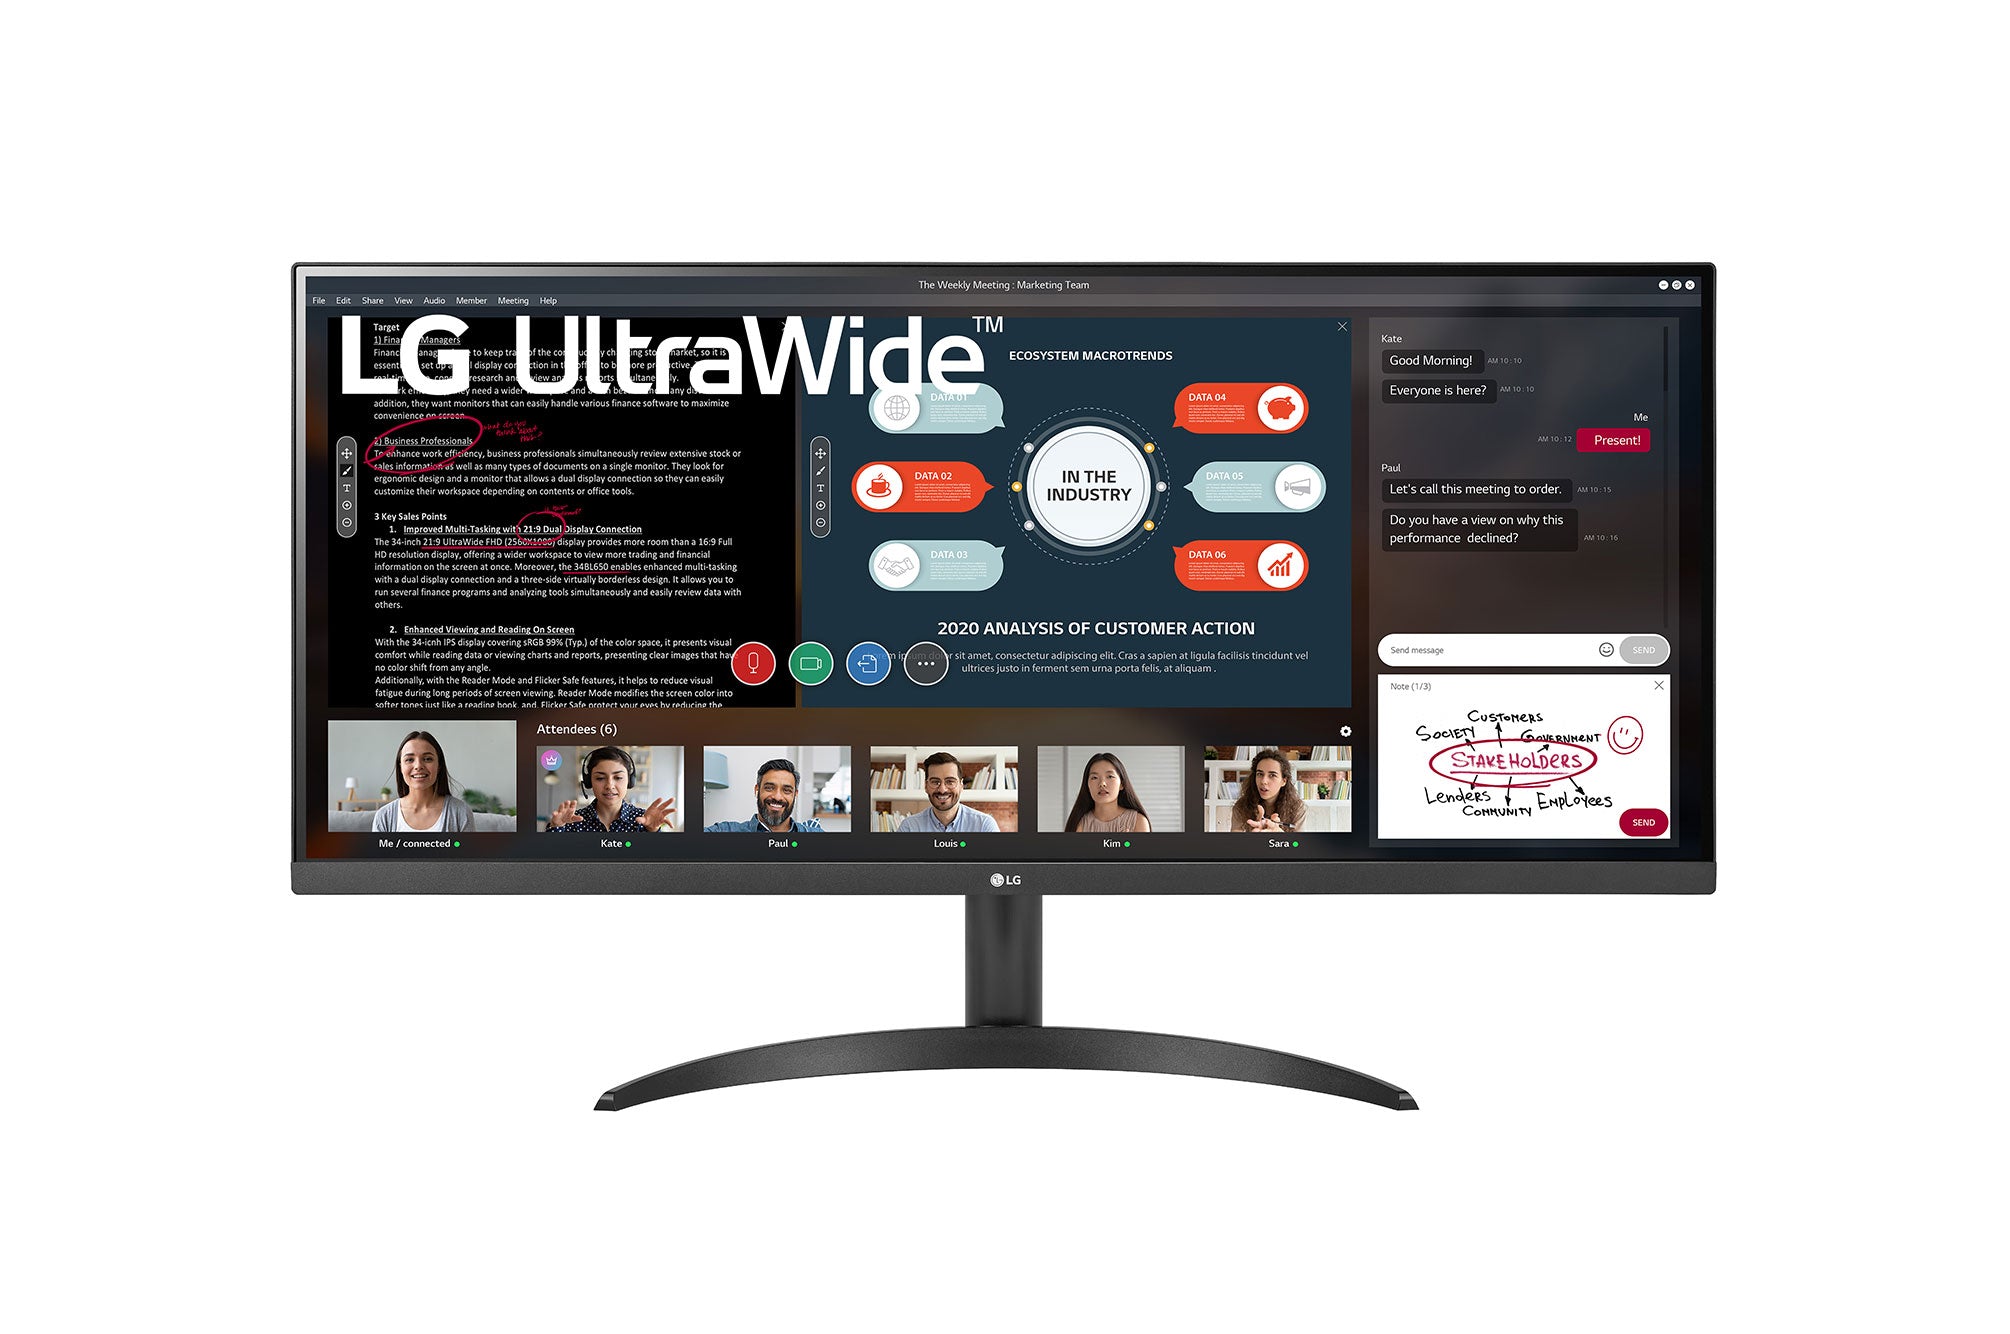 LG 34WP500 UltraWide Monitor / 34 inch / 2560 x 1080 Resolution / AMD FreeSync / Dynamic Action Sync / Black Stabilizer